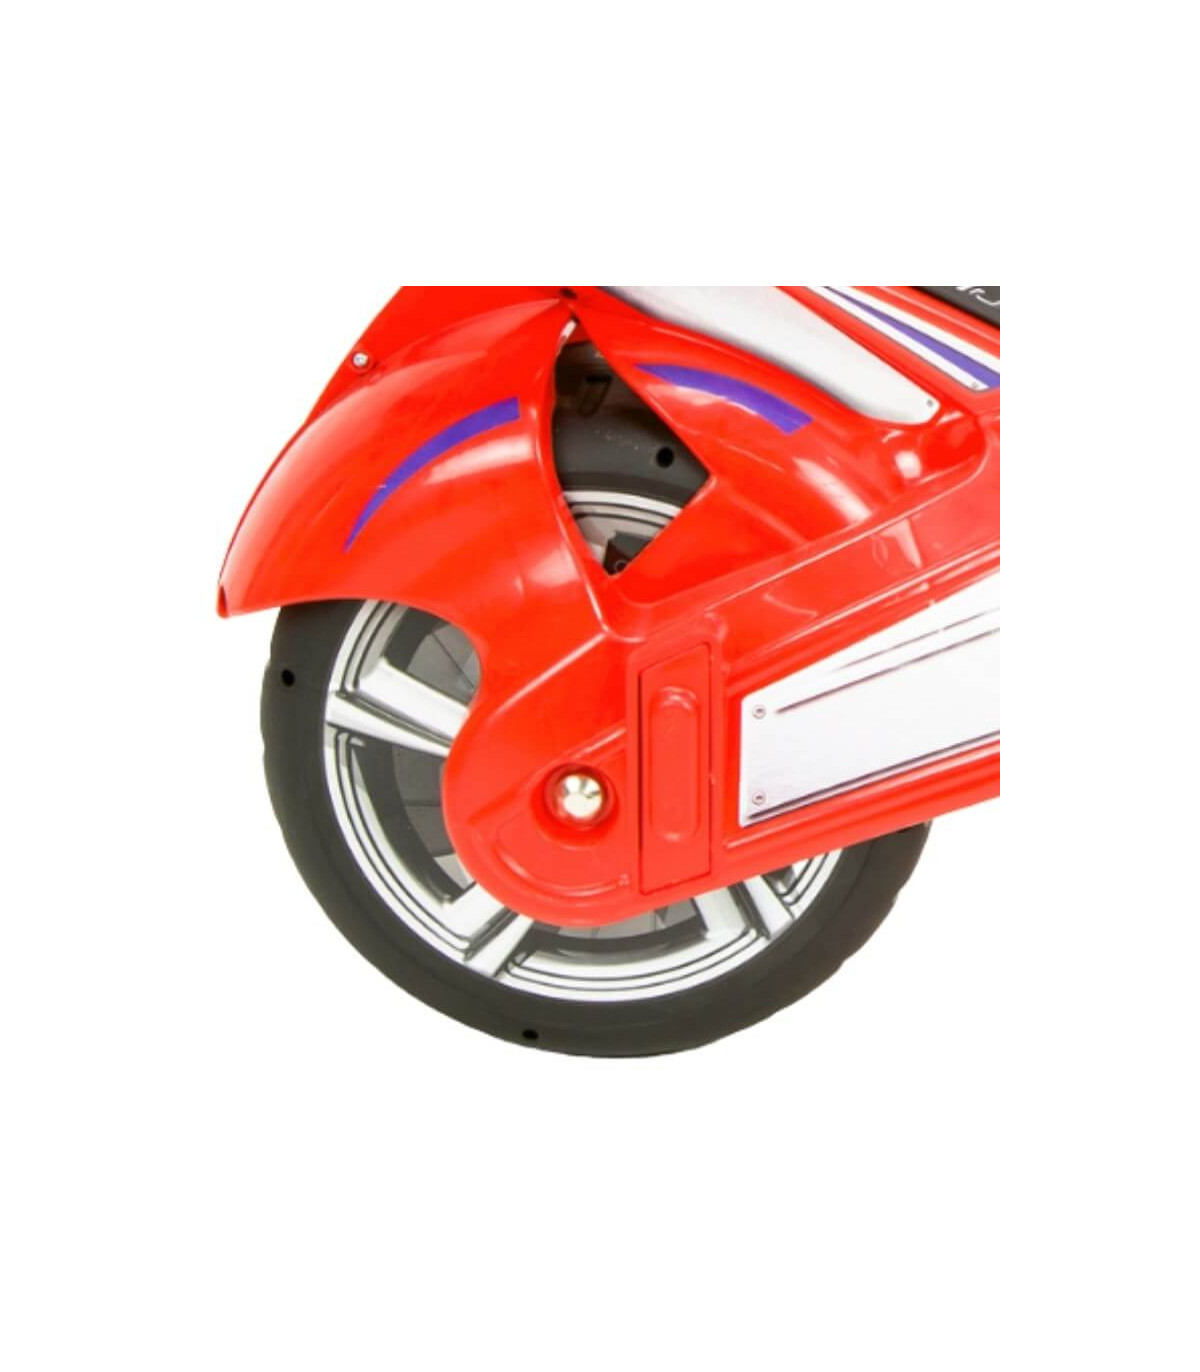 Support moto sur rouleaux pour roue arrière ou avant - GMR Racing